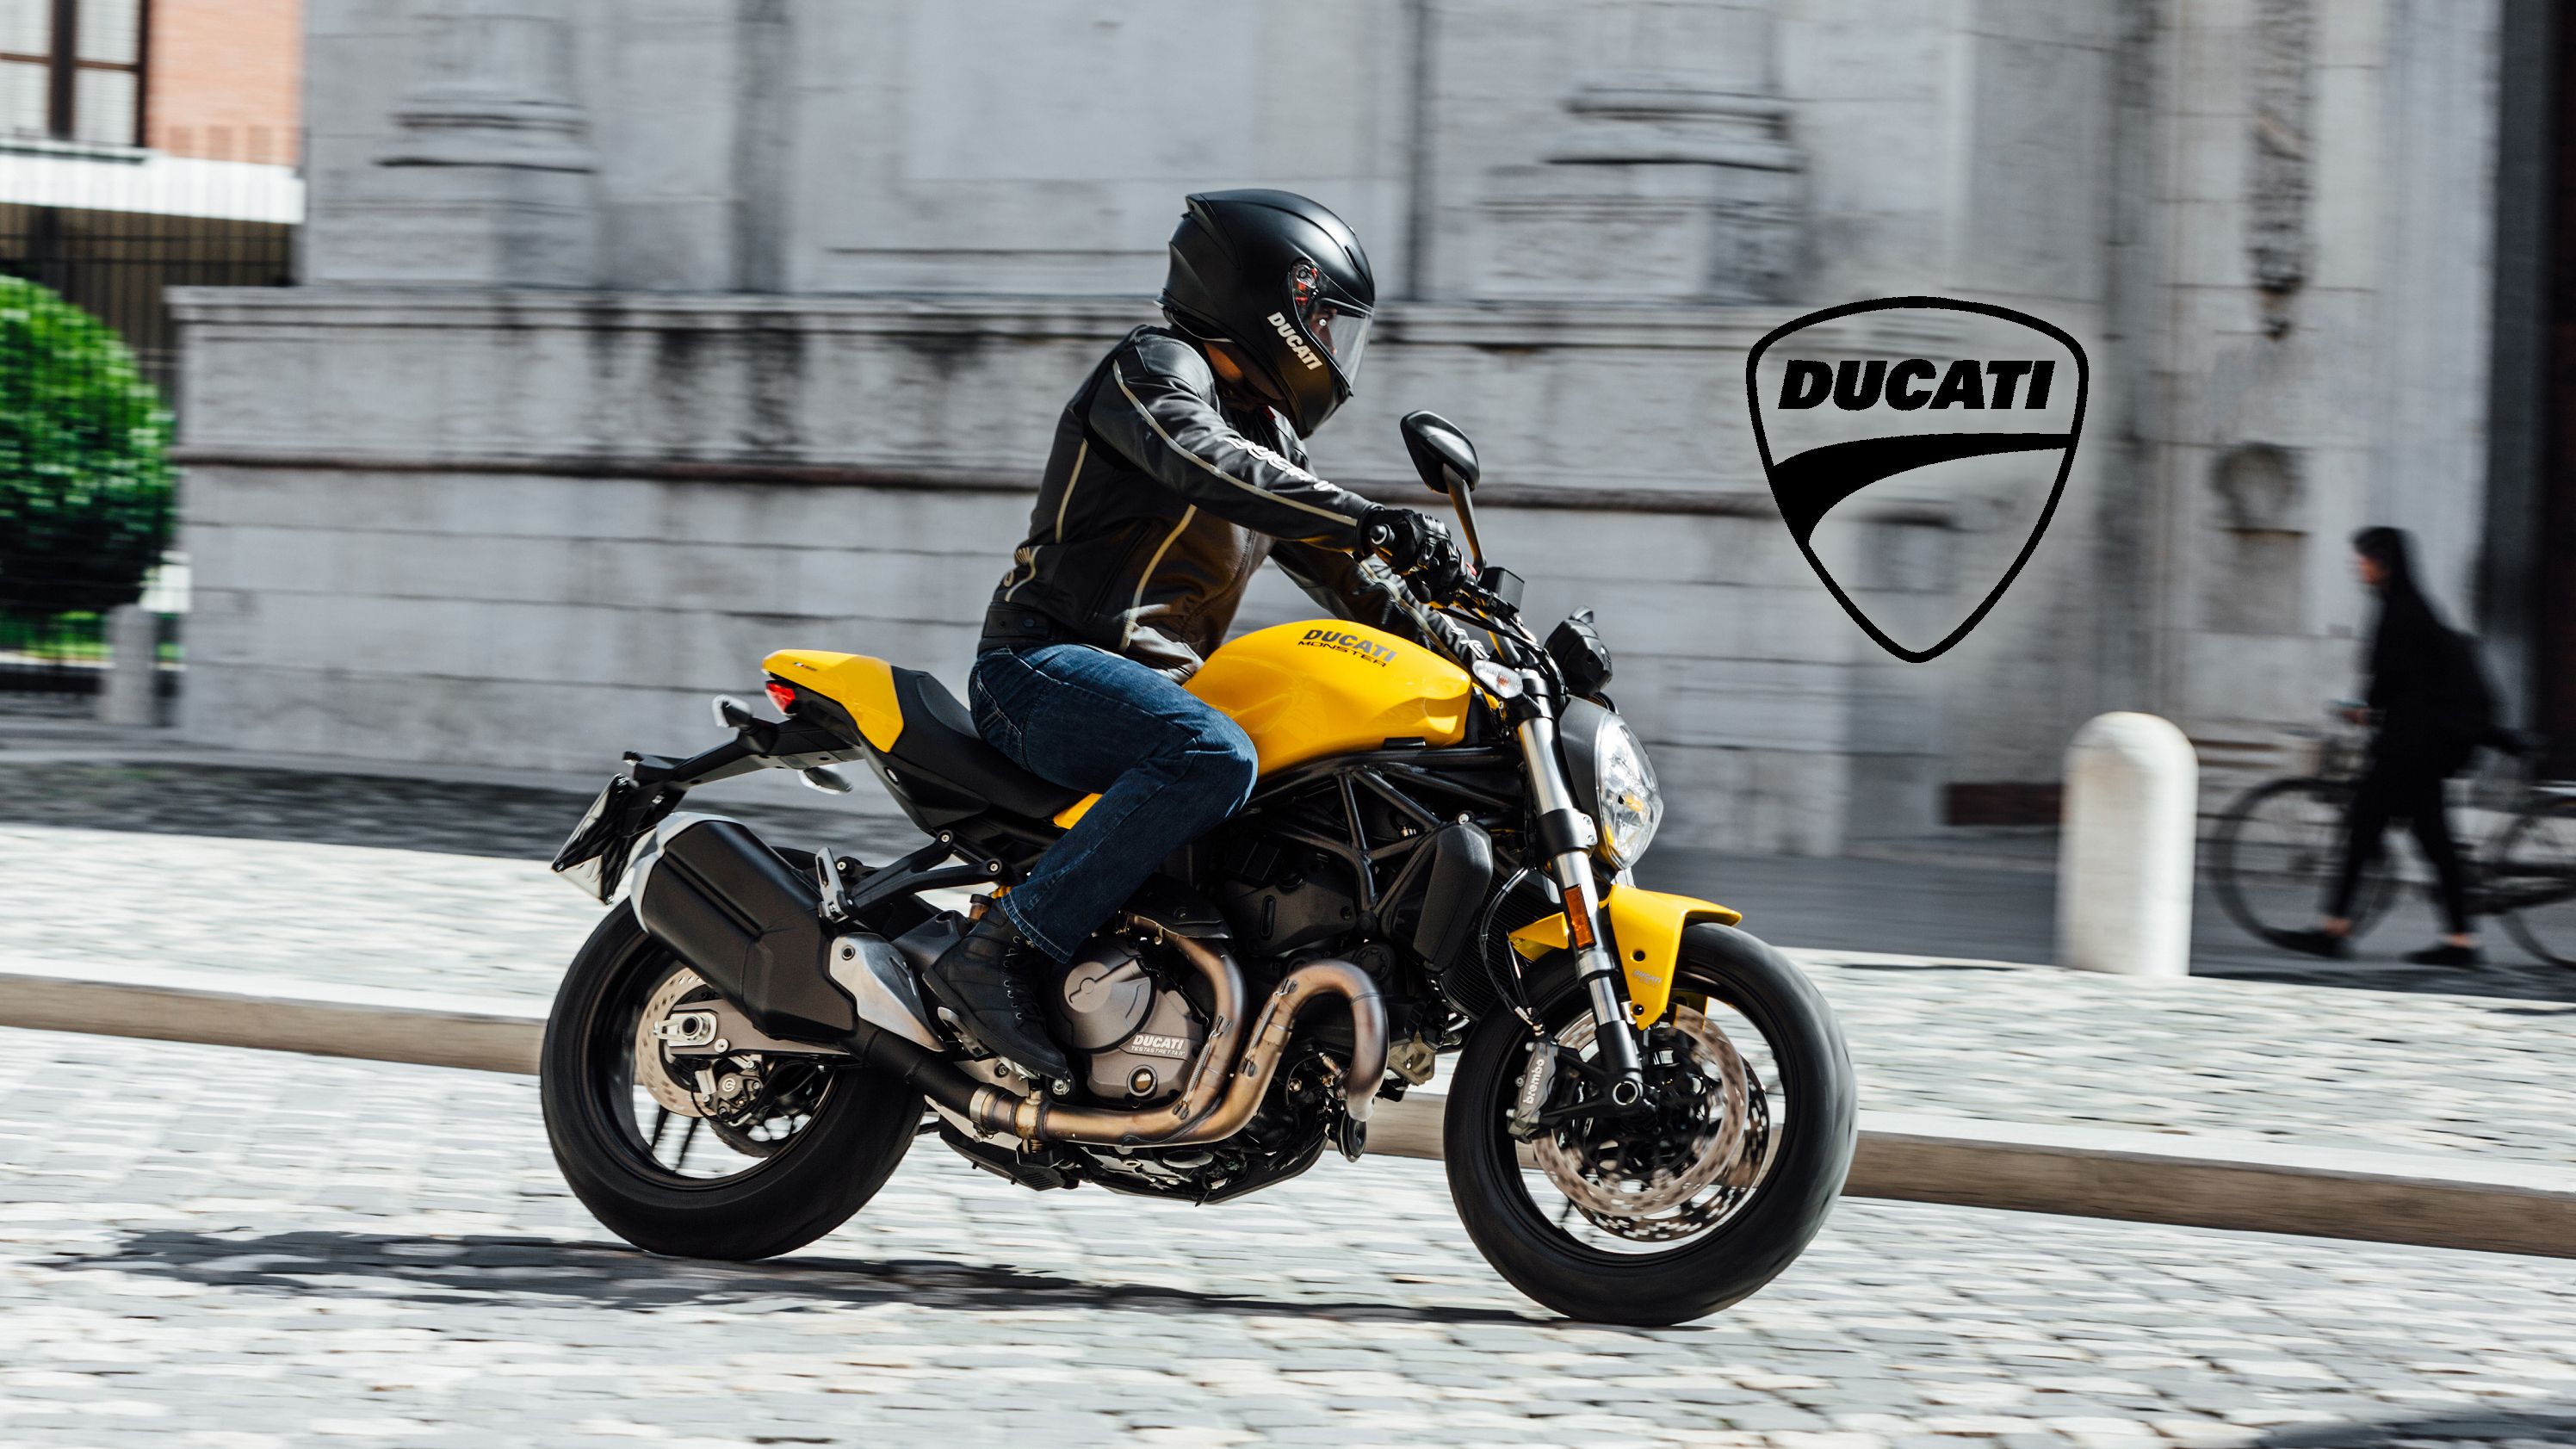 2018 - 2020 Ducati Monster 821